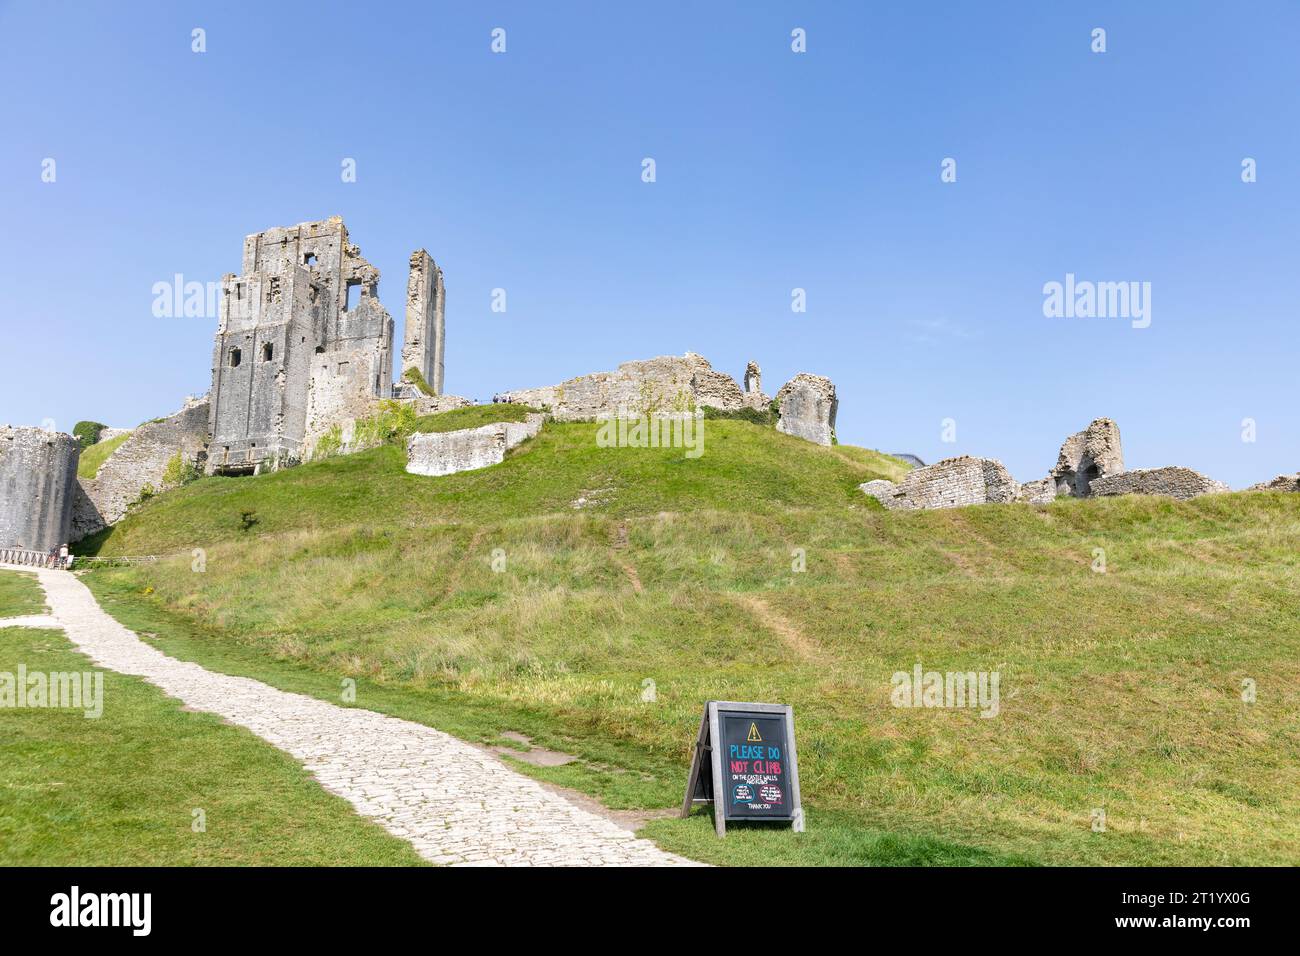 Corfe Castle ruines en pierre sur l'île de Purbeck dans le Dorset, un château du 11e siècle construit par Guillaume le Conquérant, Angleterre, automne 2023 Banque D'Images